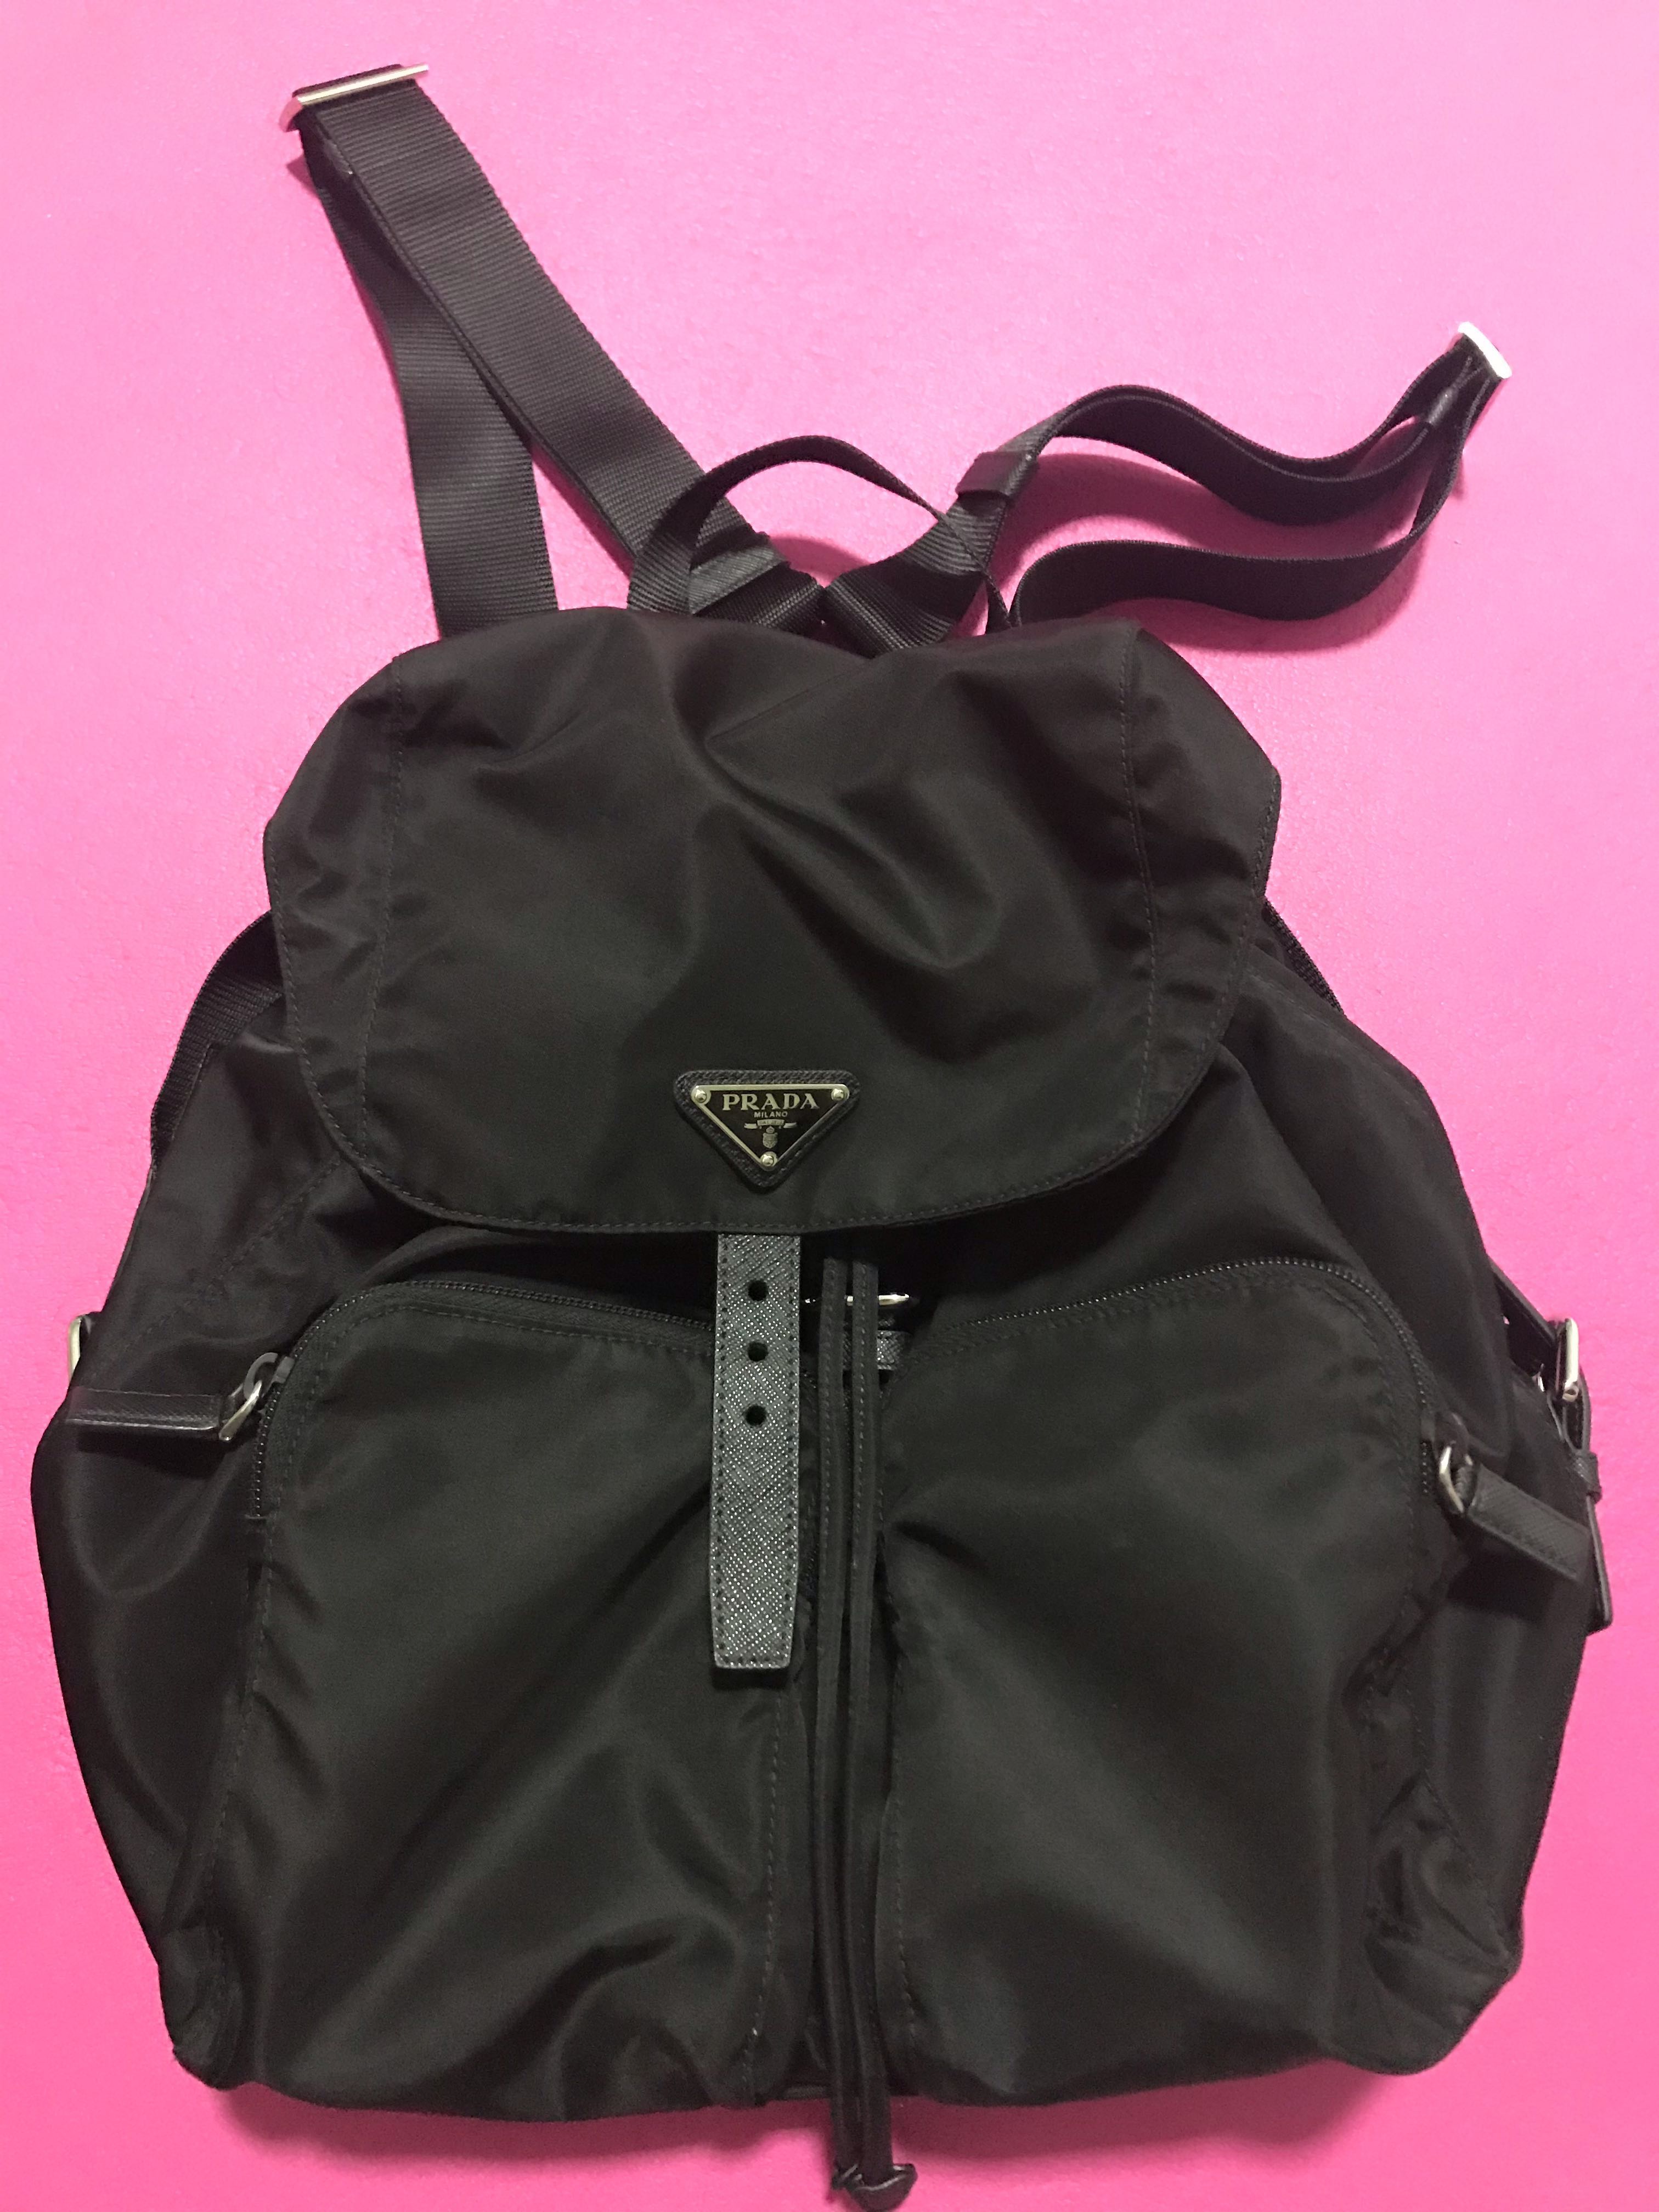 Prada Zainetto Unisex Black Tessuto Nylon Backpack Rucksack 1BZ005